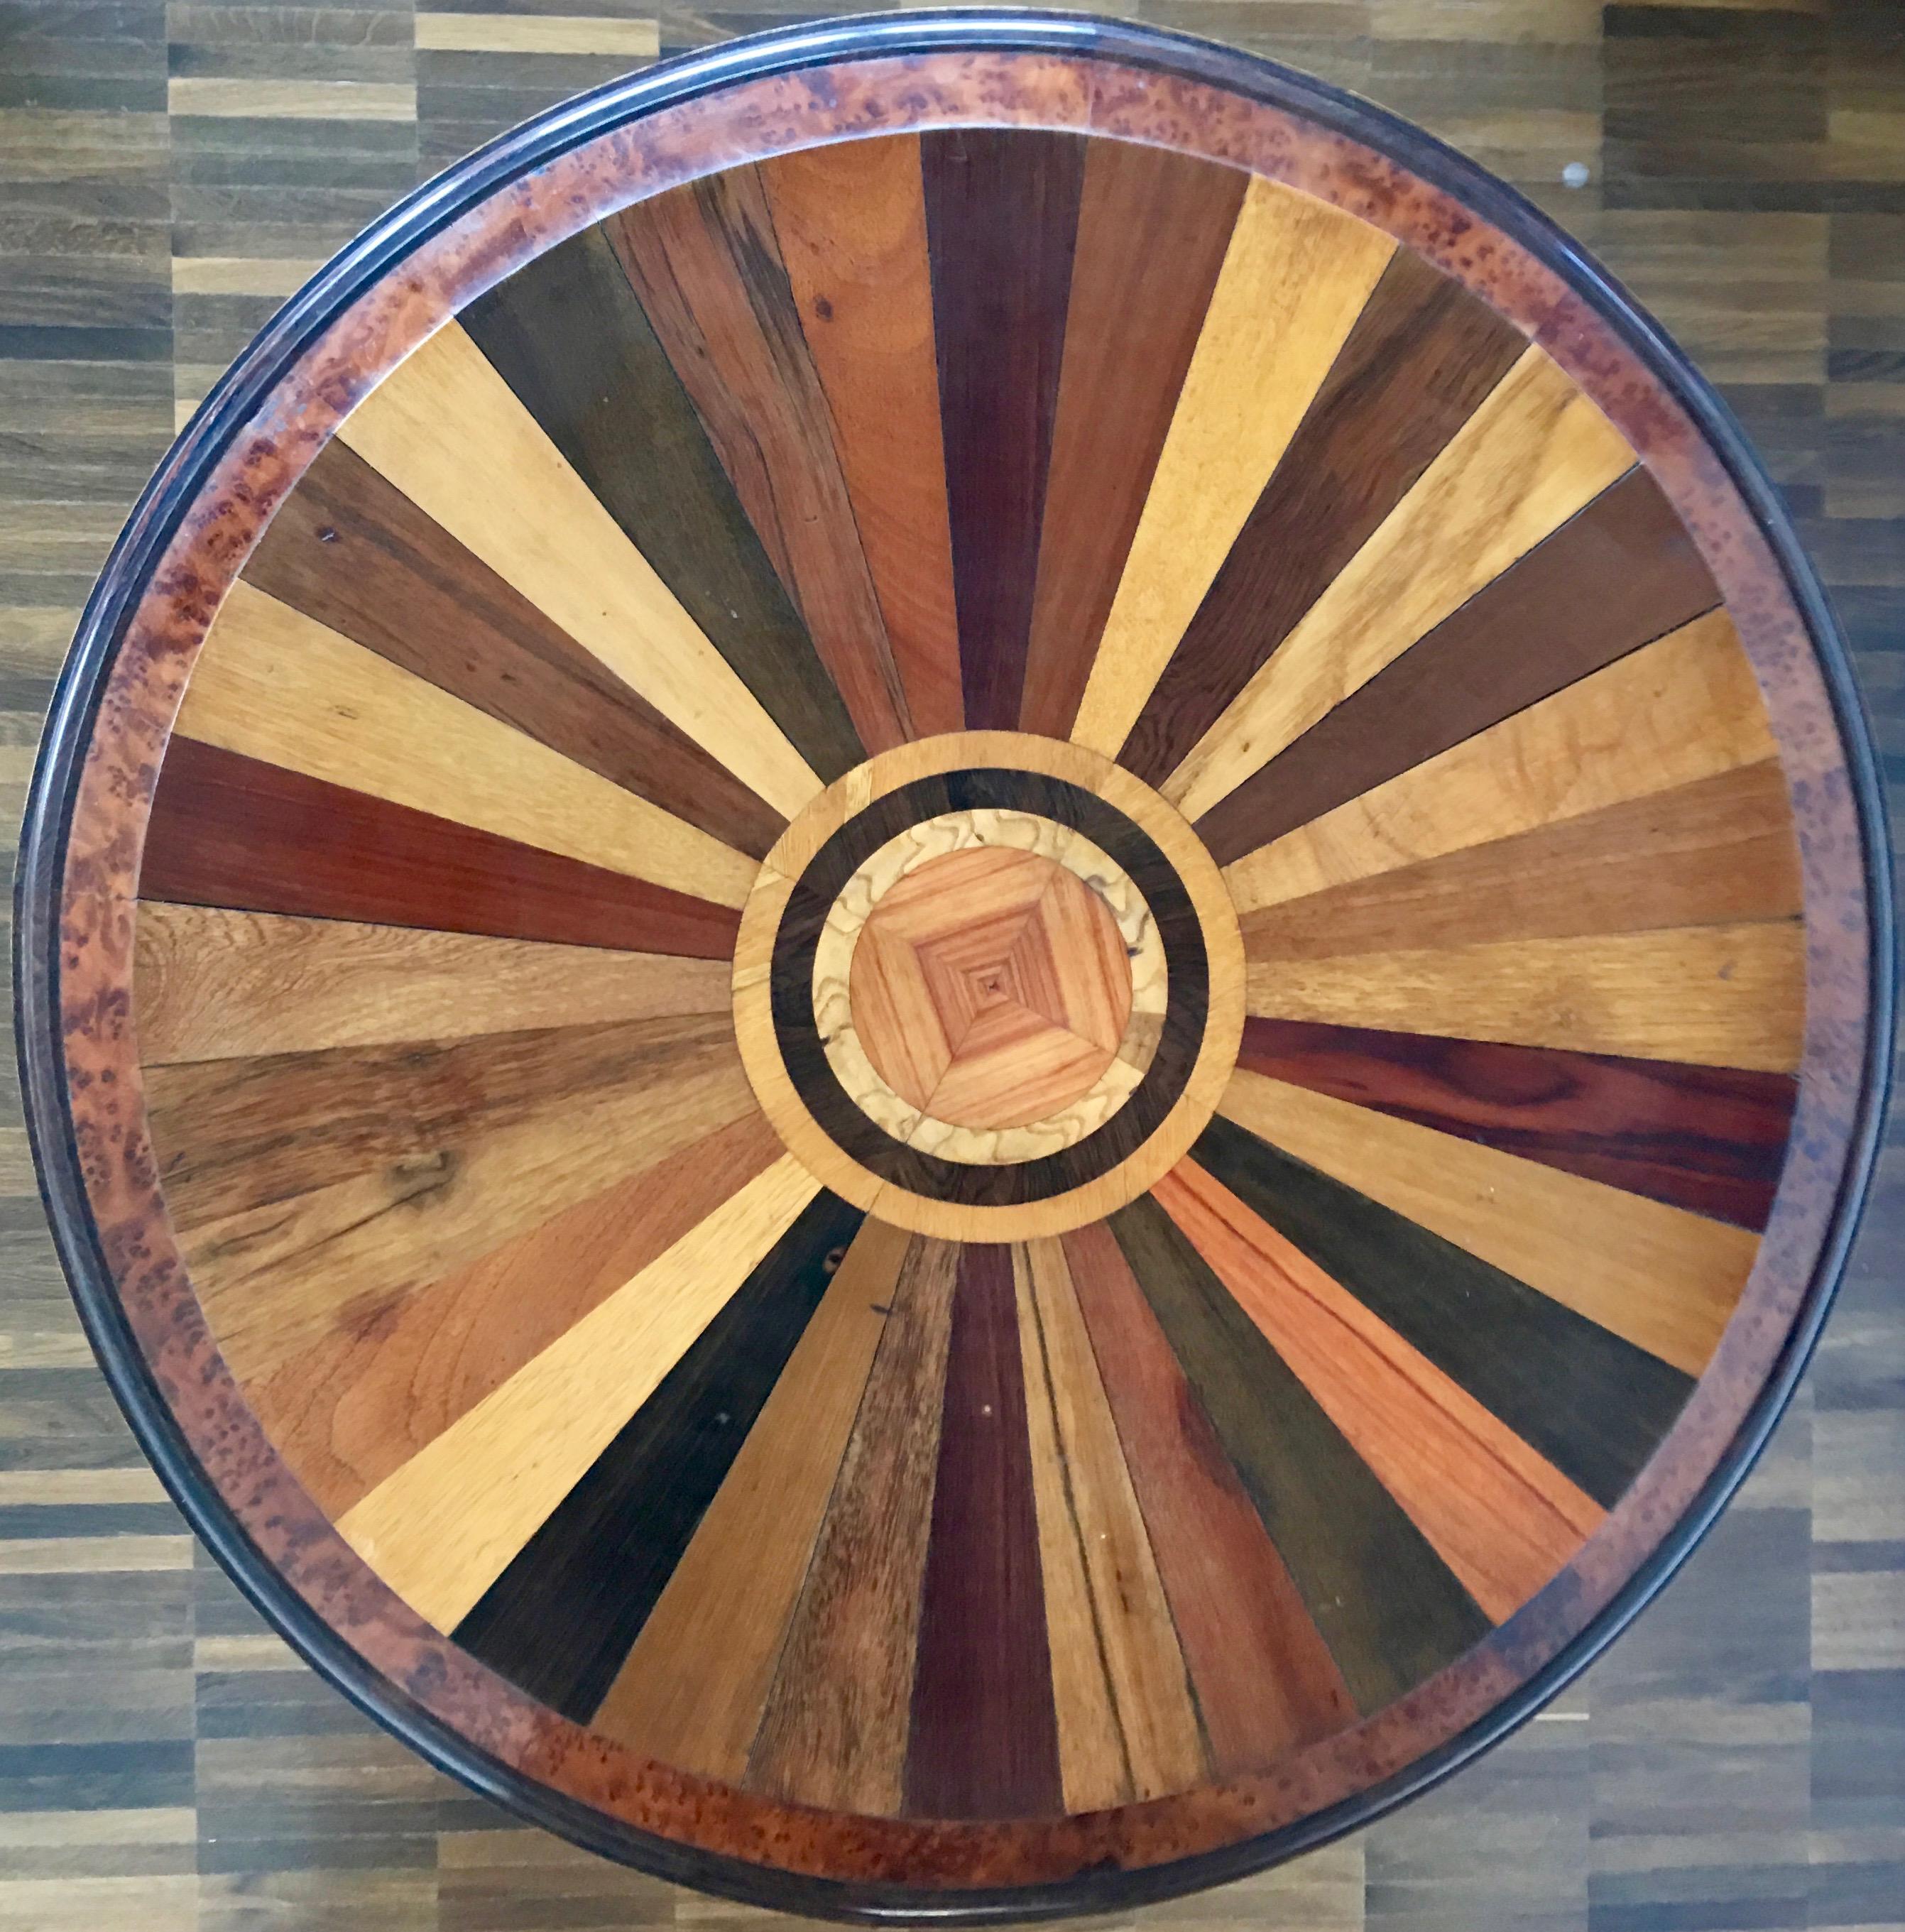 Runder Tisch eines französischen Schreiners, zweite Hälfte des 19. Jahrhunderts.
Ein sehr hochwertiger Beistelltisch; die runde, mit ca. 35 verschiedenen Holzarten furnierte Platte steht auf einem gedrechselten, mit Ebonit und Wurzelholz furnierten